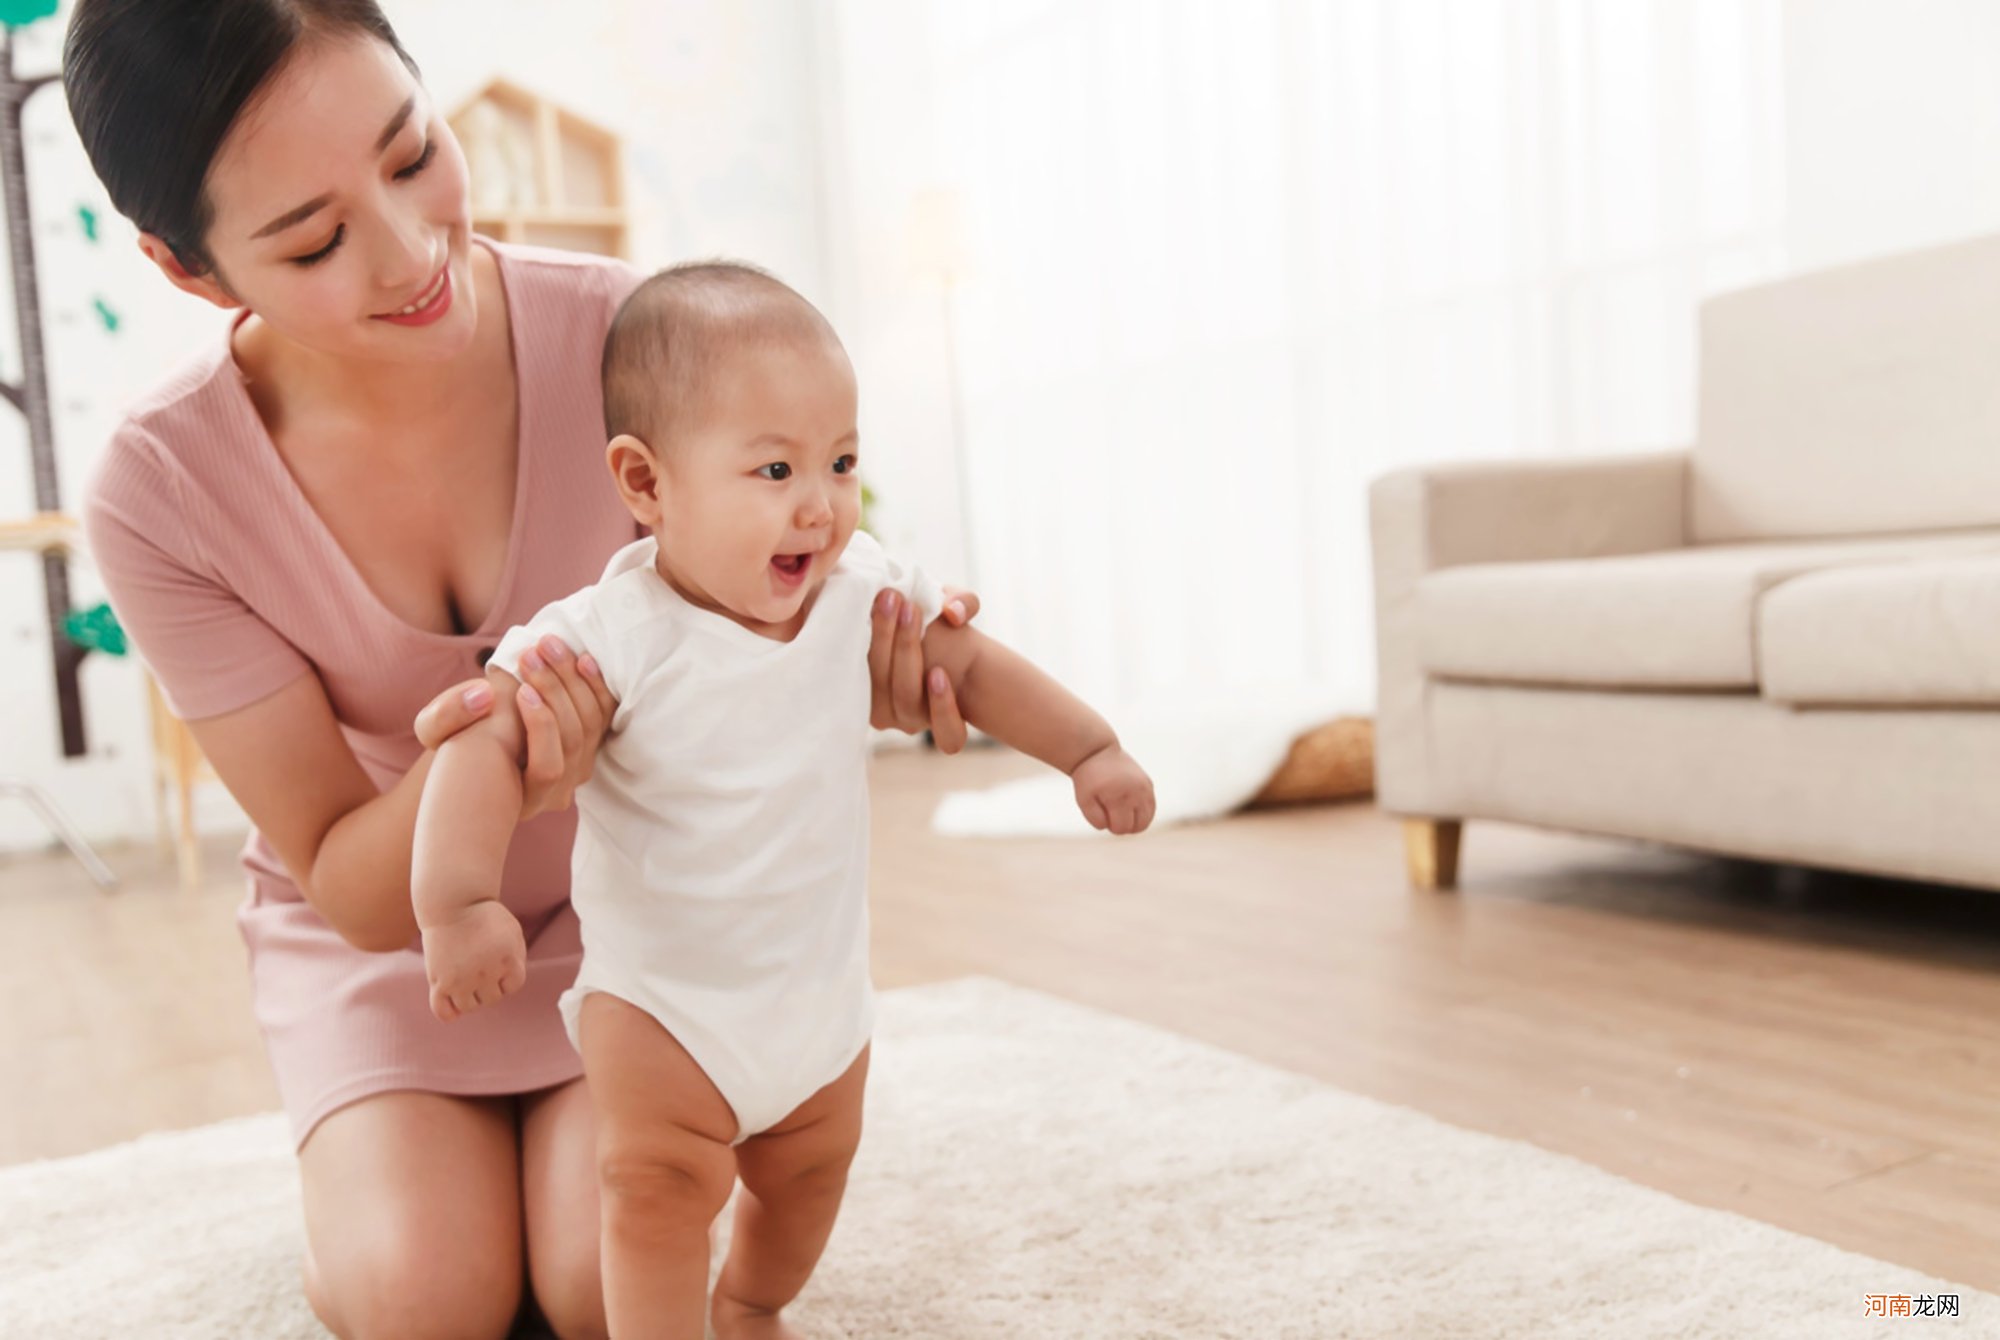 宝宝啥时候学走路最好？不早于这个月份就行，否则影响生长发育